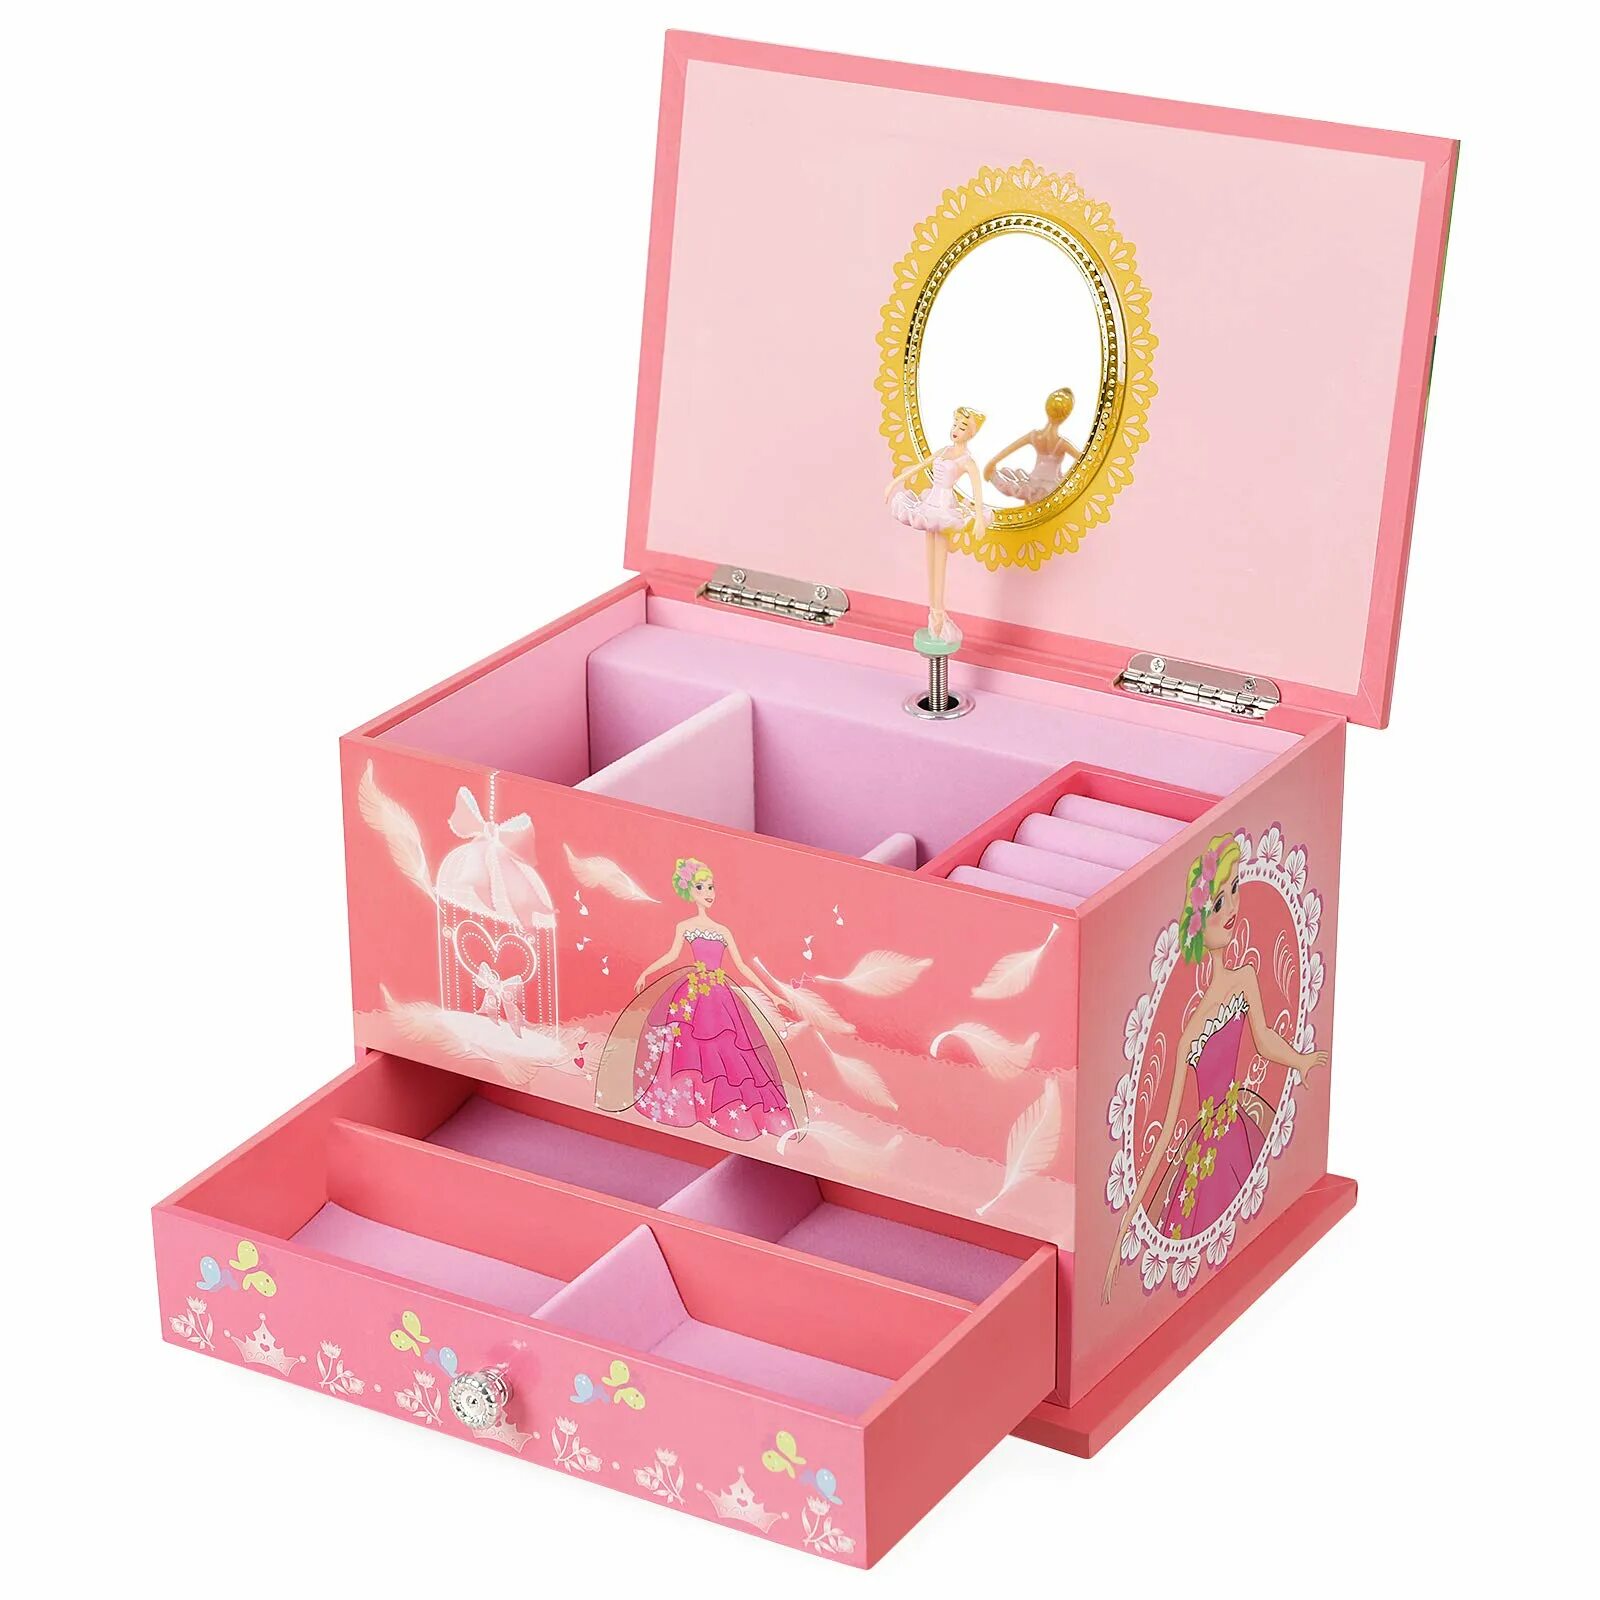 Музыкальная шкатулка сундучок Musical jewerly Box Shenzhen Toys д54155. Подарок для девочки. Подарок девочке на 7 лет. Подарок на новый год девочке. Что купить дочке на год